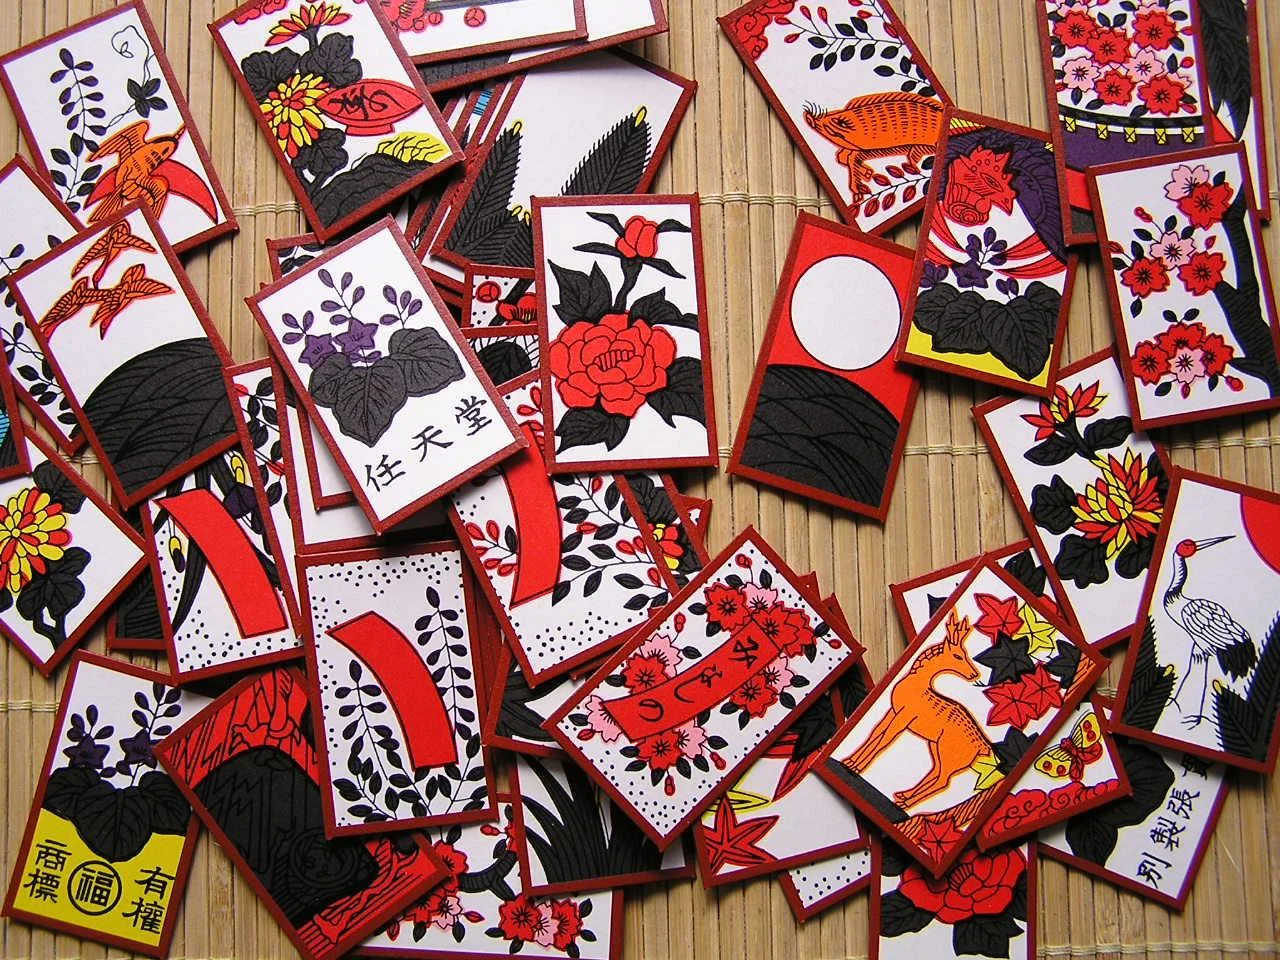 Ханафуда (яп. 花札) — разновидность колоды игральных карт японского происхождения, используемая для нескольких различных игр. Состоит из 48 карт — 12 мастей по 4 карты. Также этим термином называются и сами игры с использованием такой колоды. Название дословно означает «цветочные карты». 